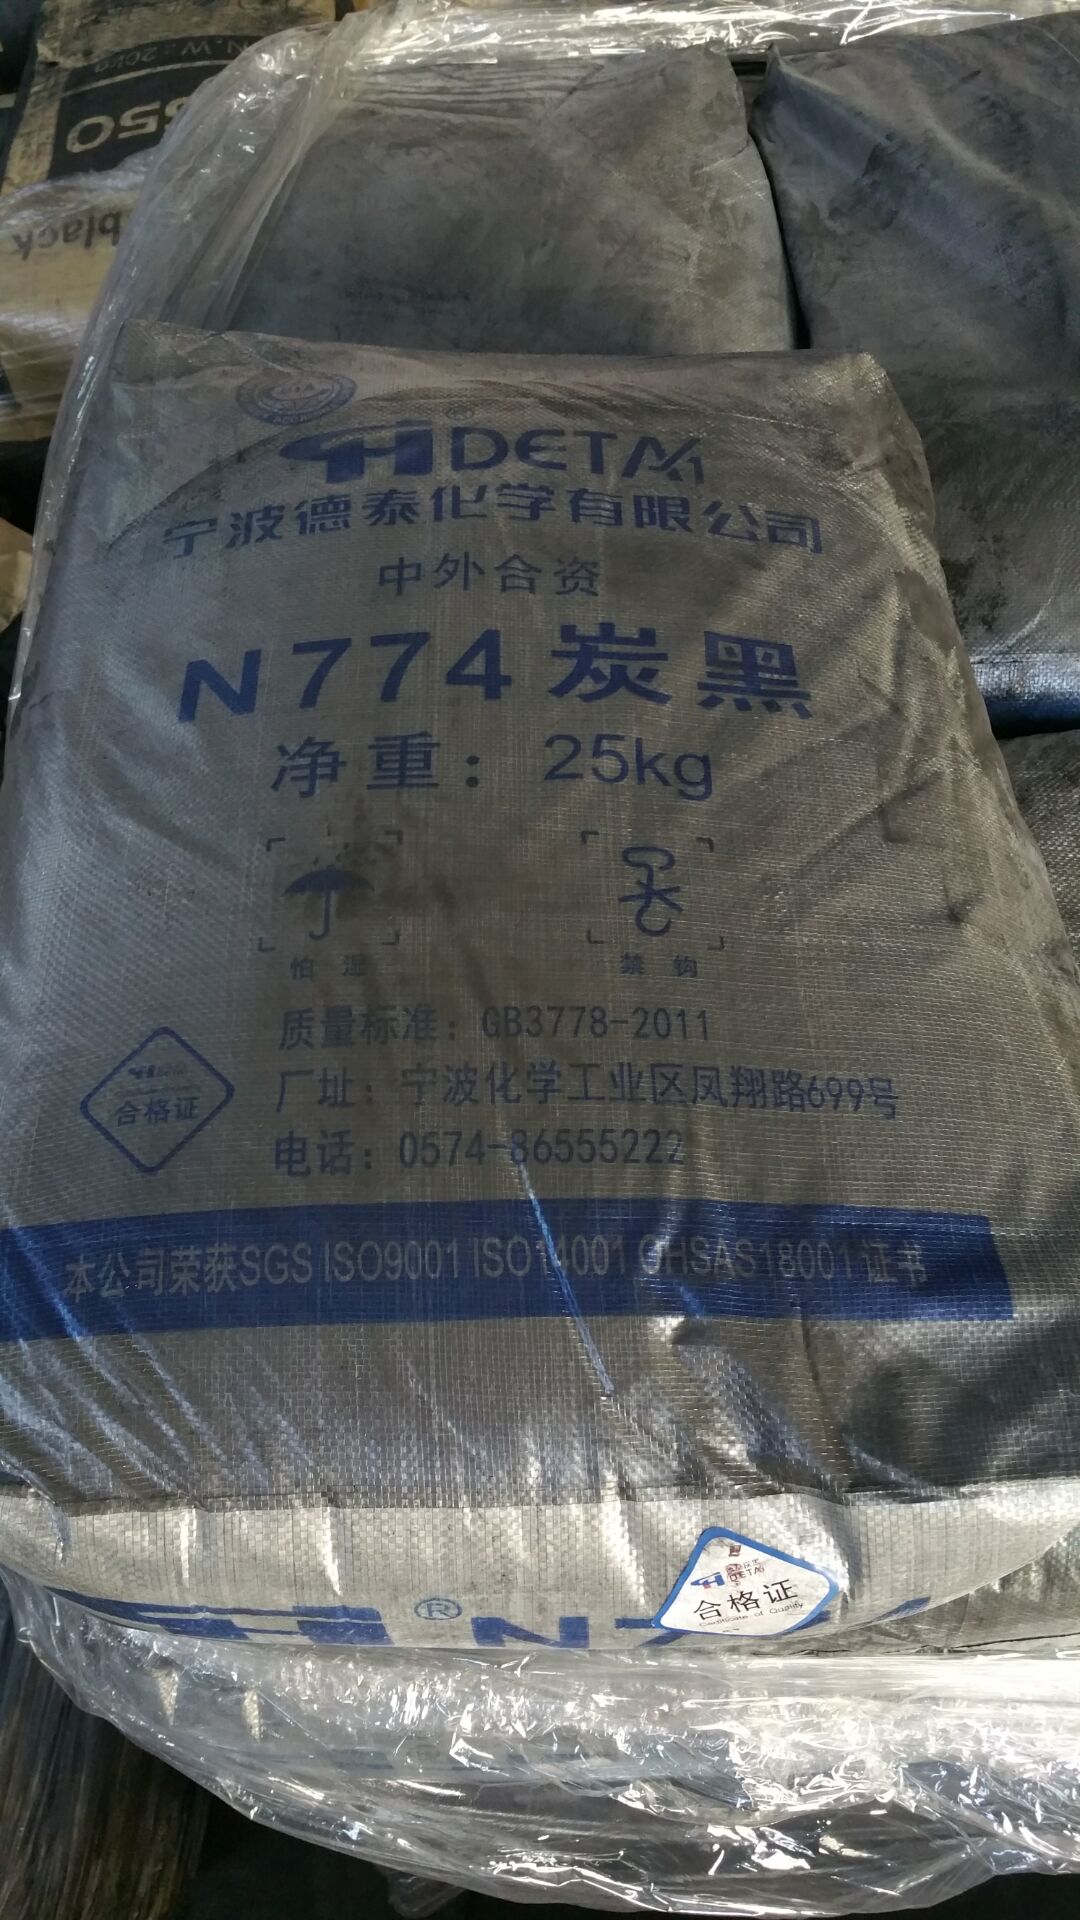 宁波德泰化学炭黑N774，宁波德泰化学炭黑N774厂家